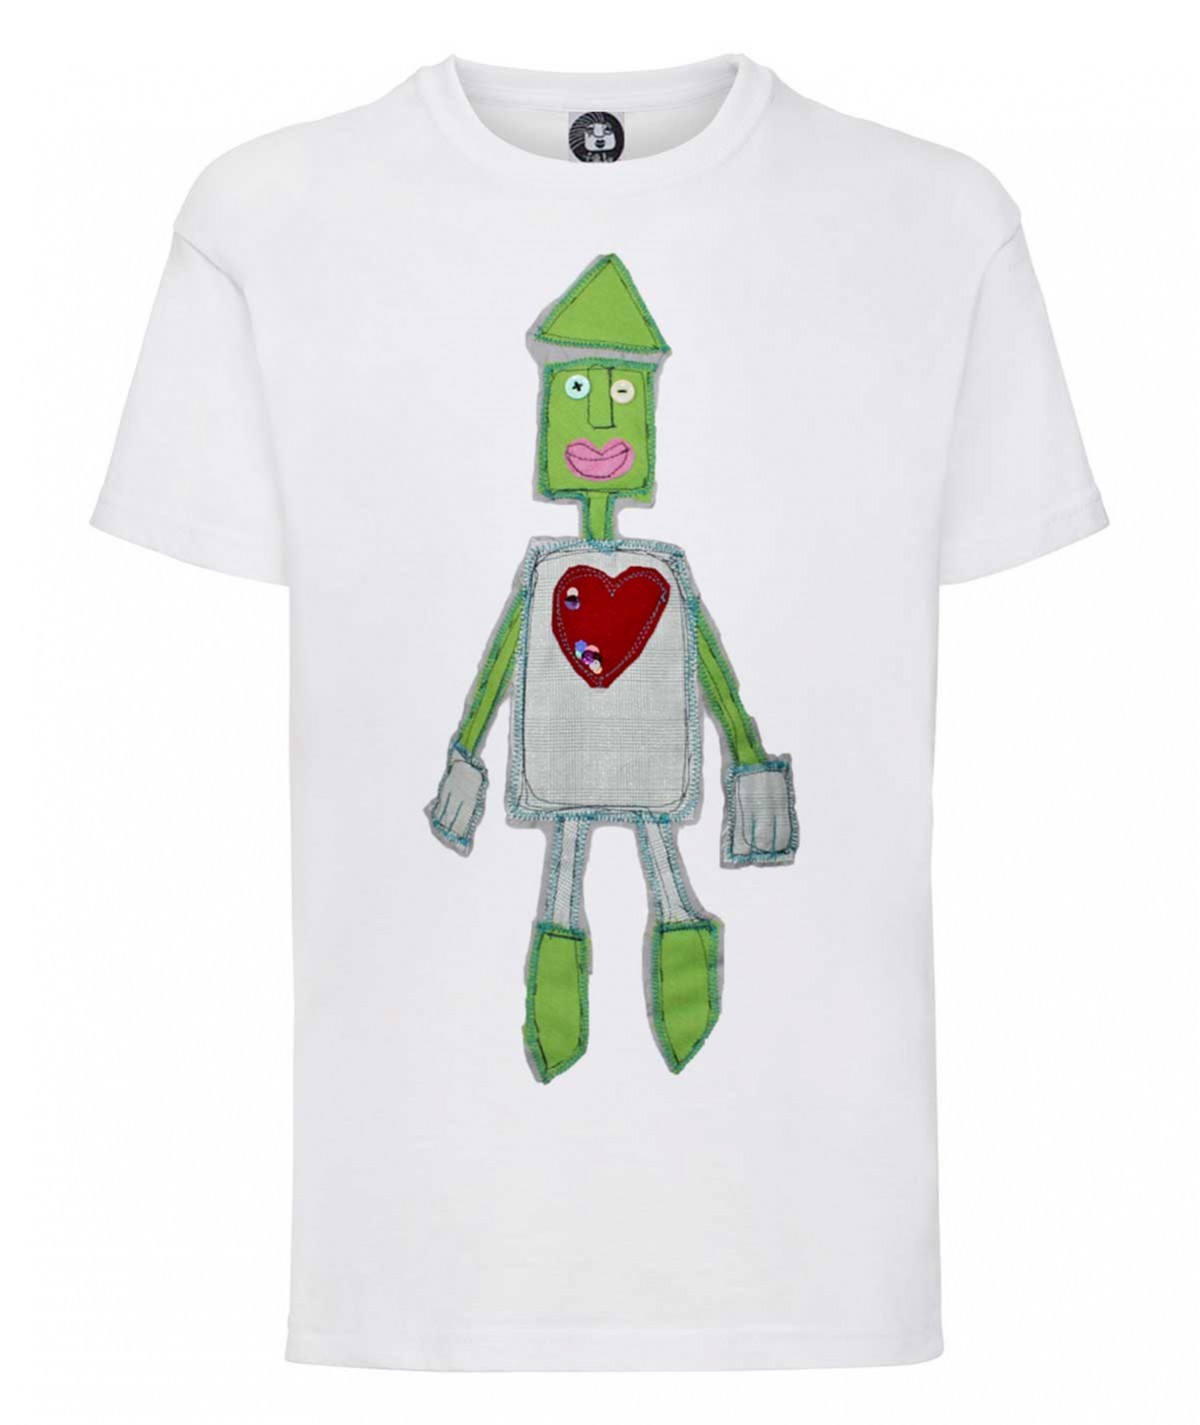 Robot t-shirt